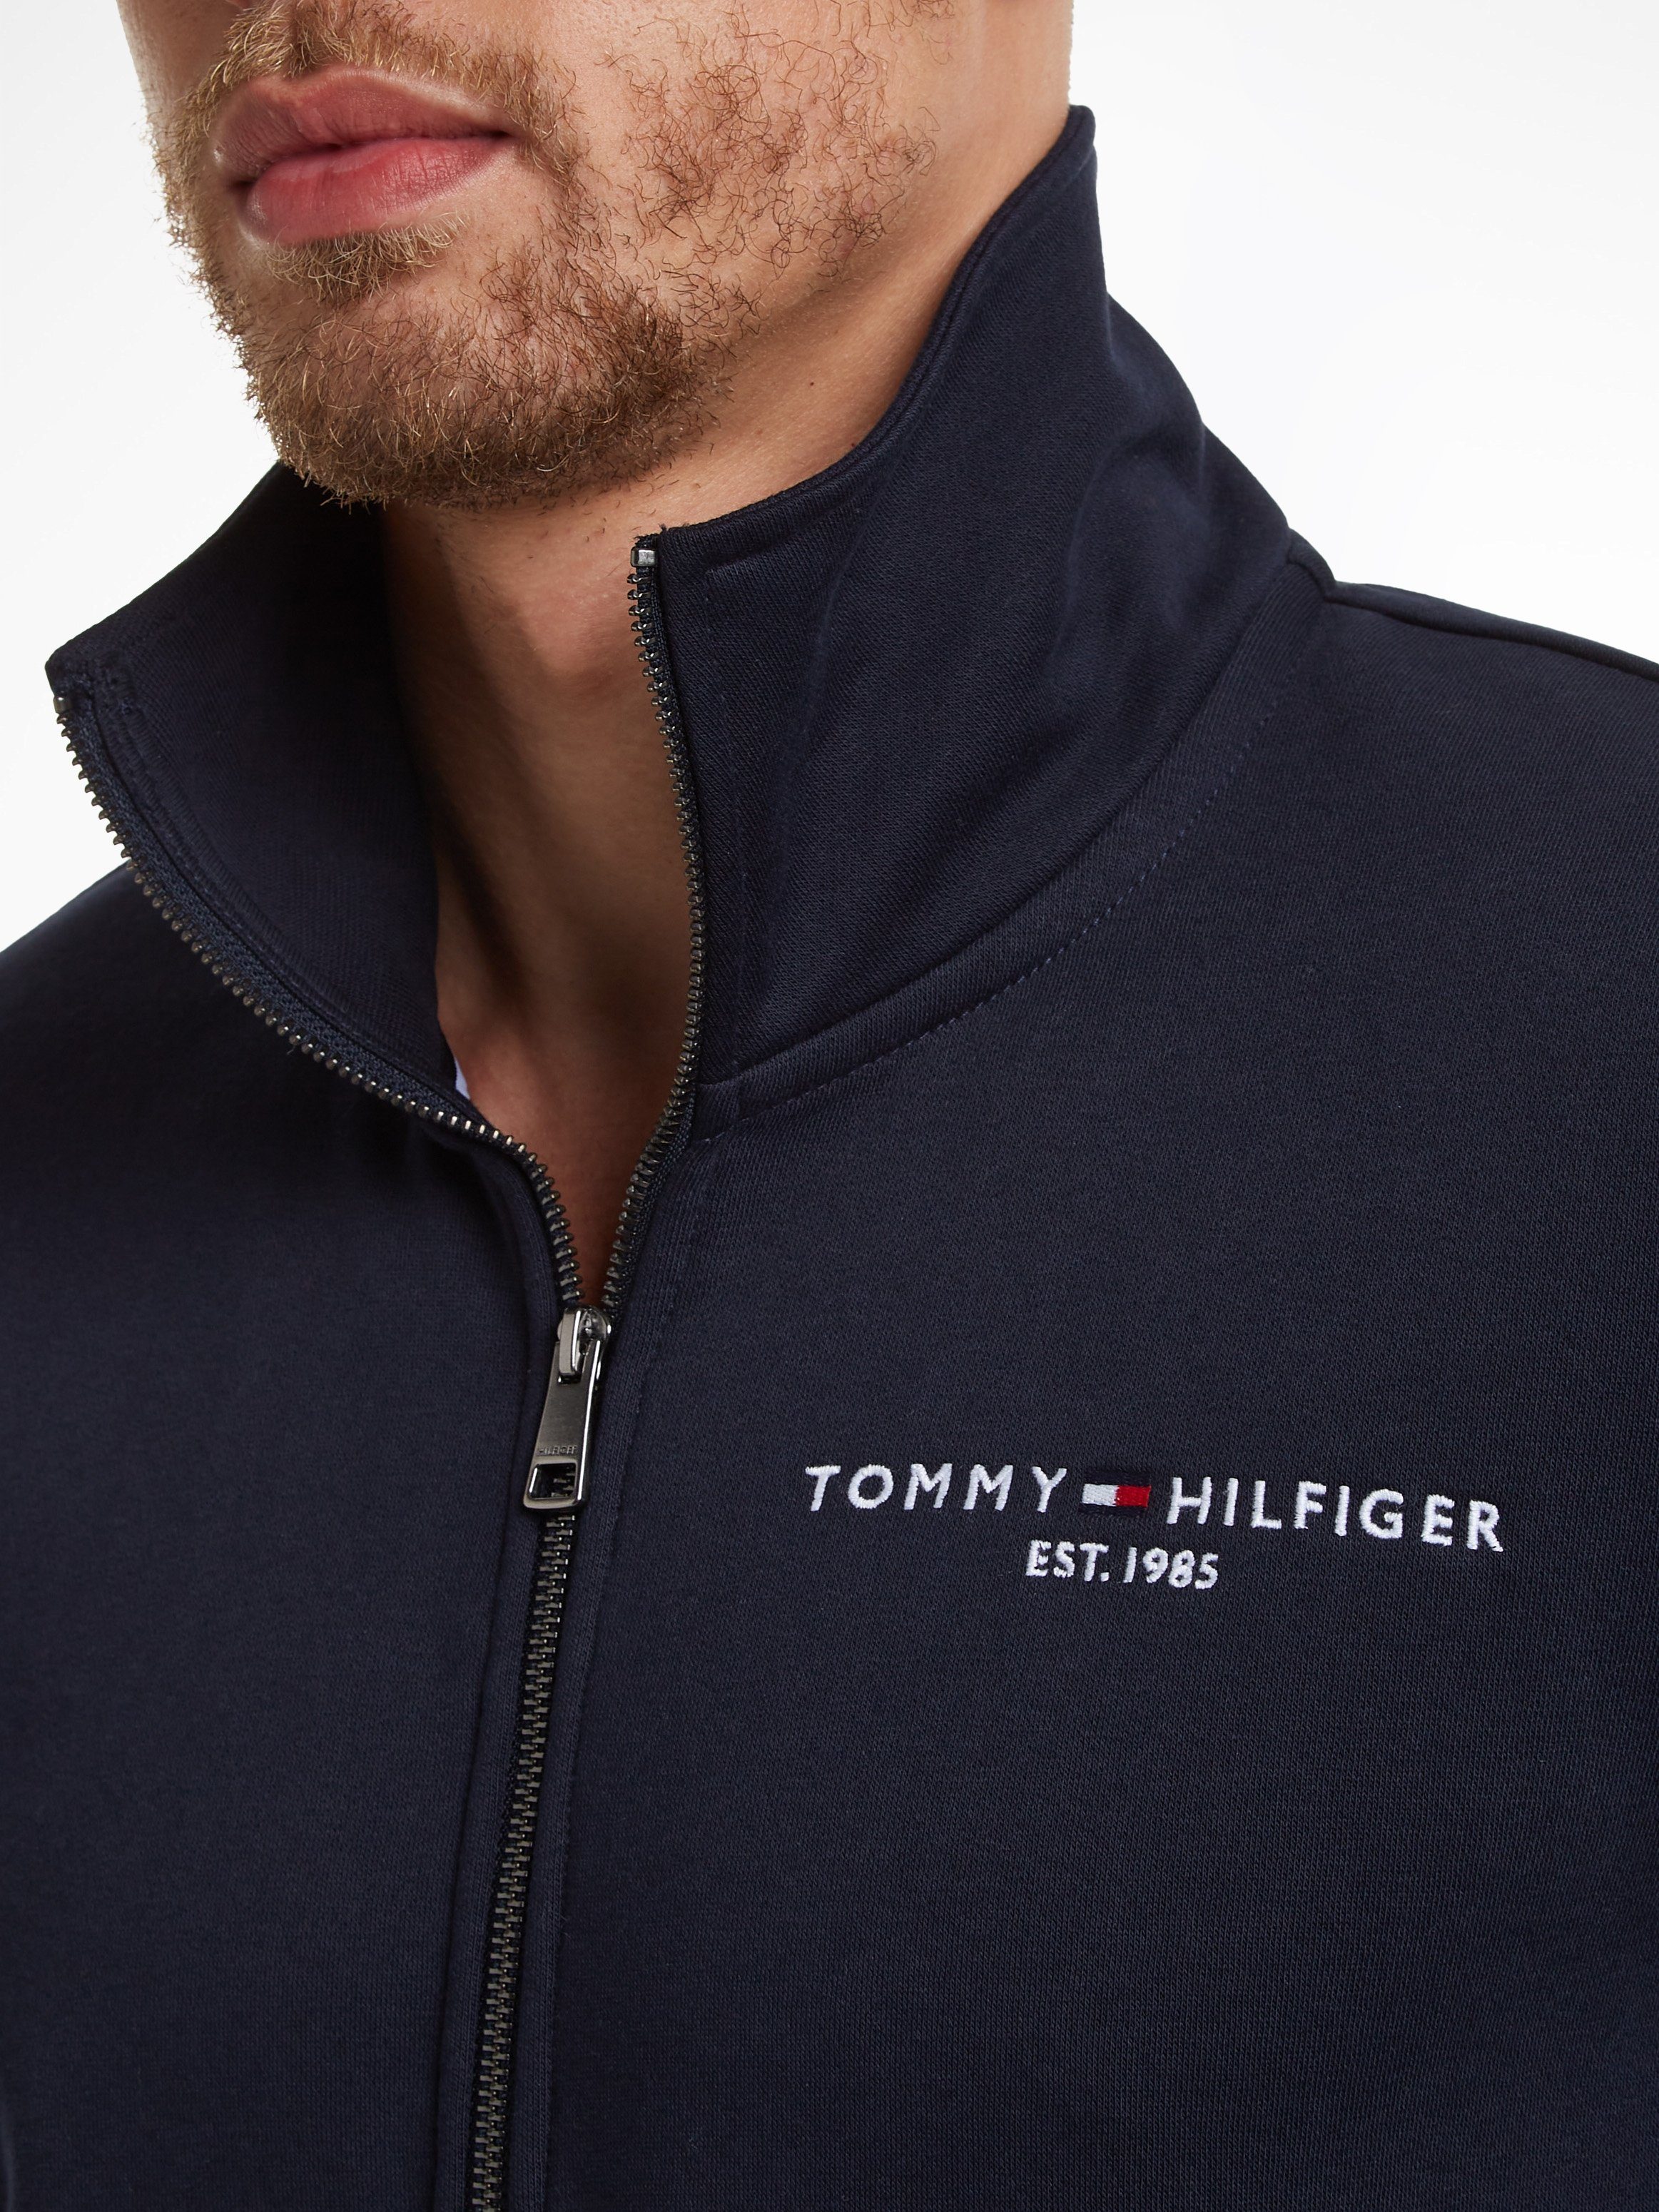 Tommy Hilfiger Sweater THRU blau LOGO und geteilter Kängurutasche TOMMY Reißverschluss ZIP COLLAR mit STAND